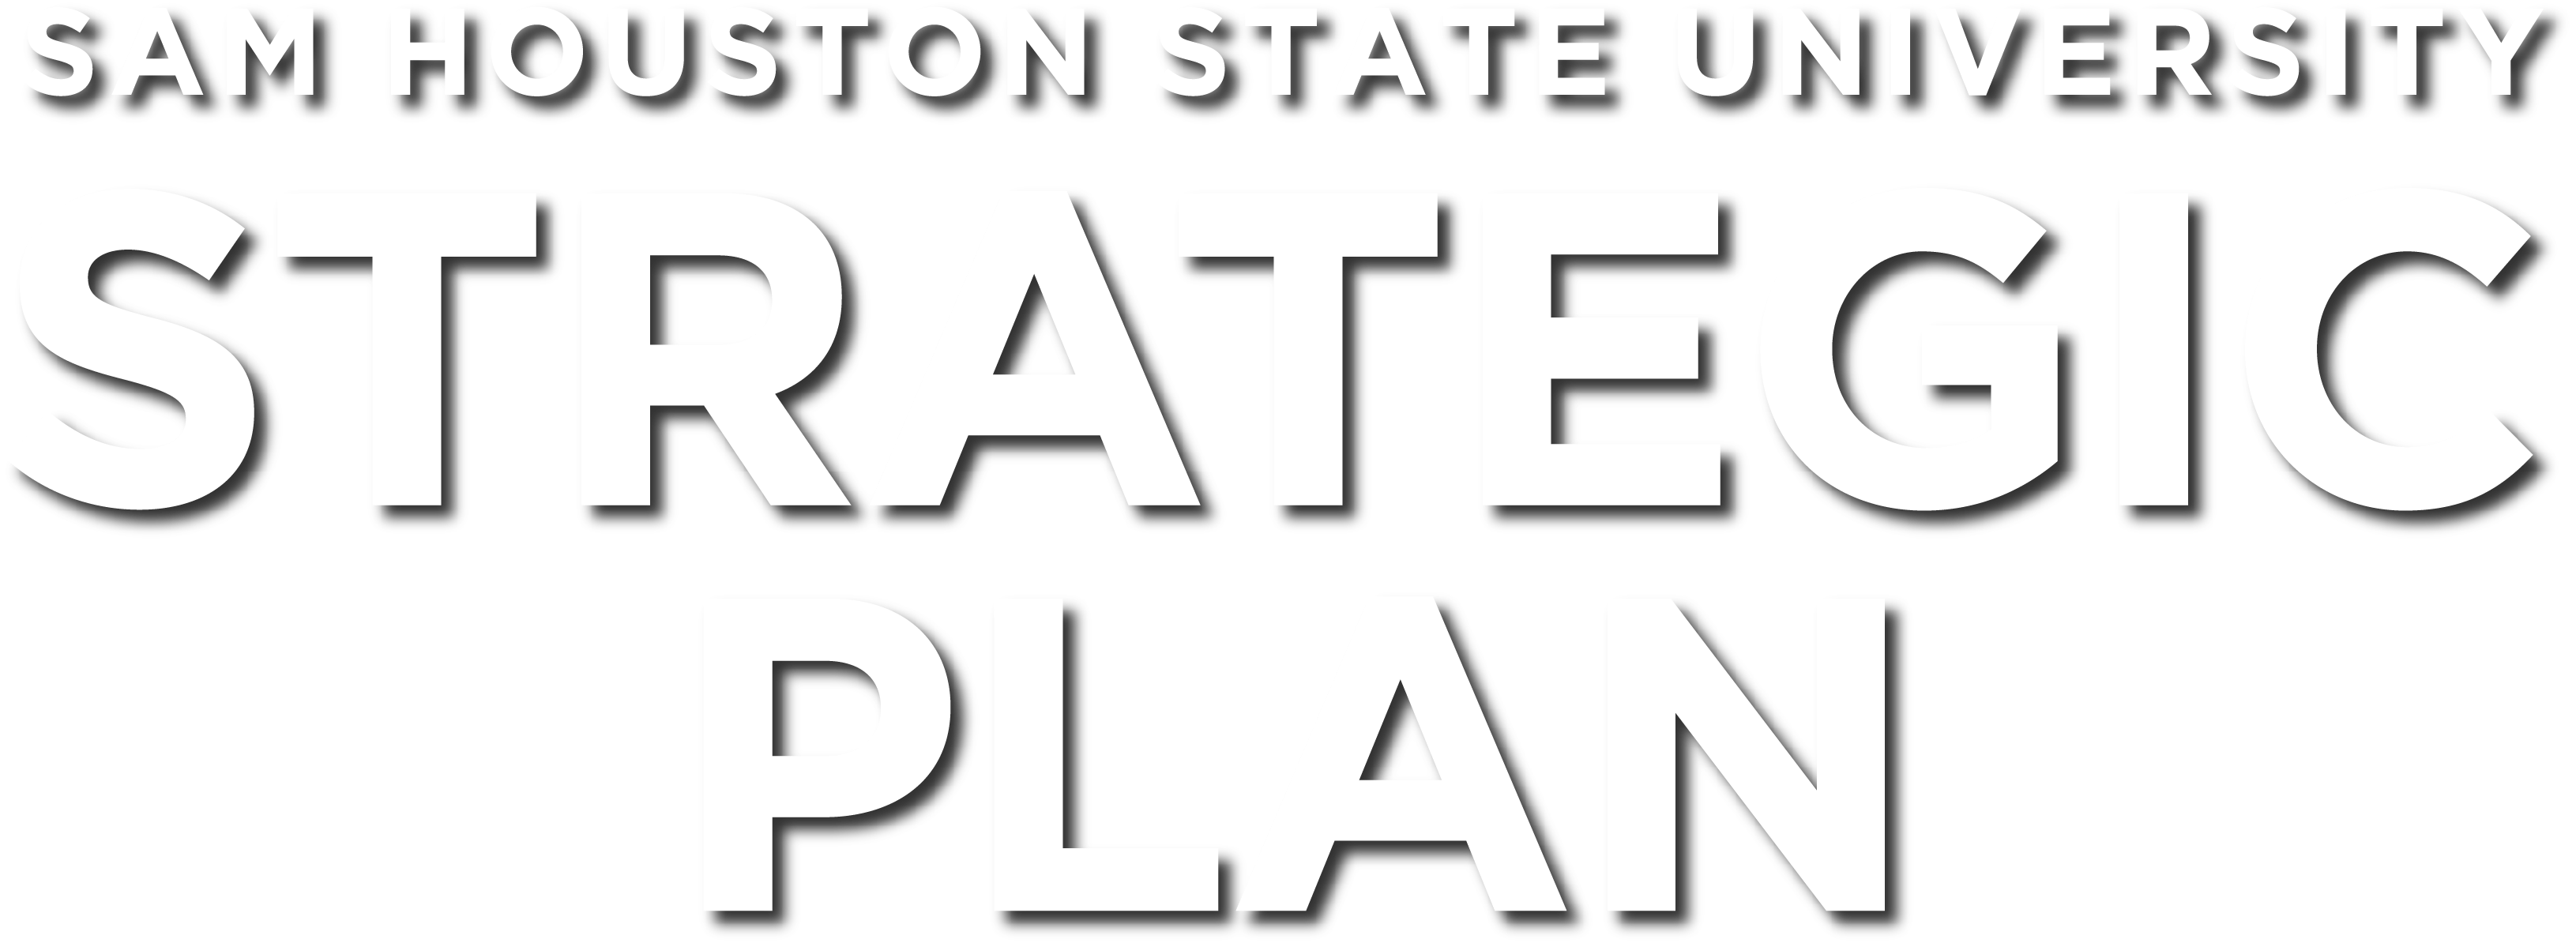 Sam Houston State University stategic plan.